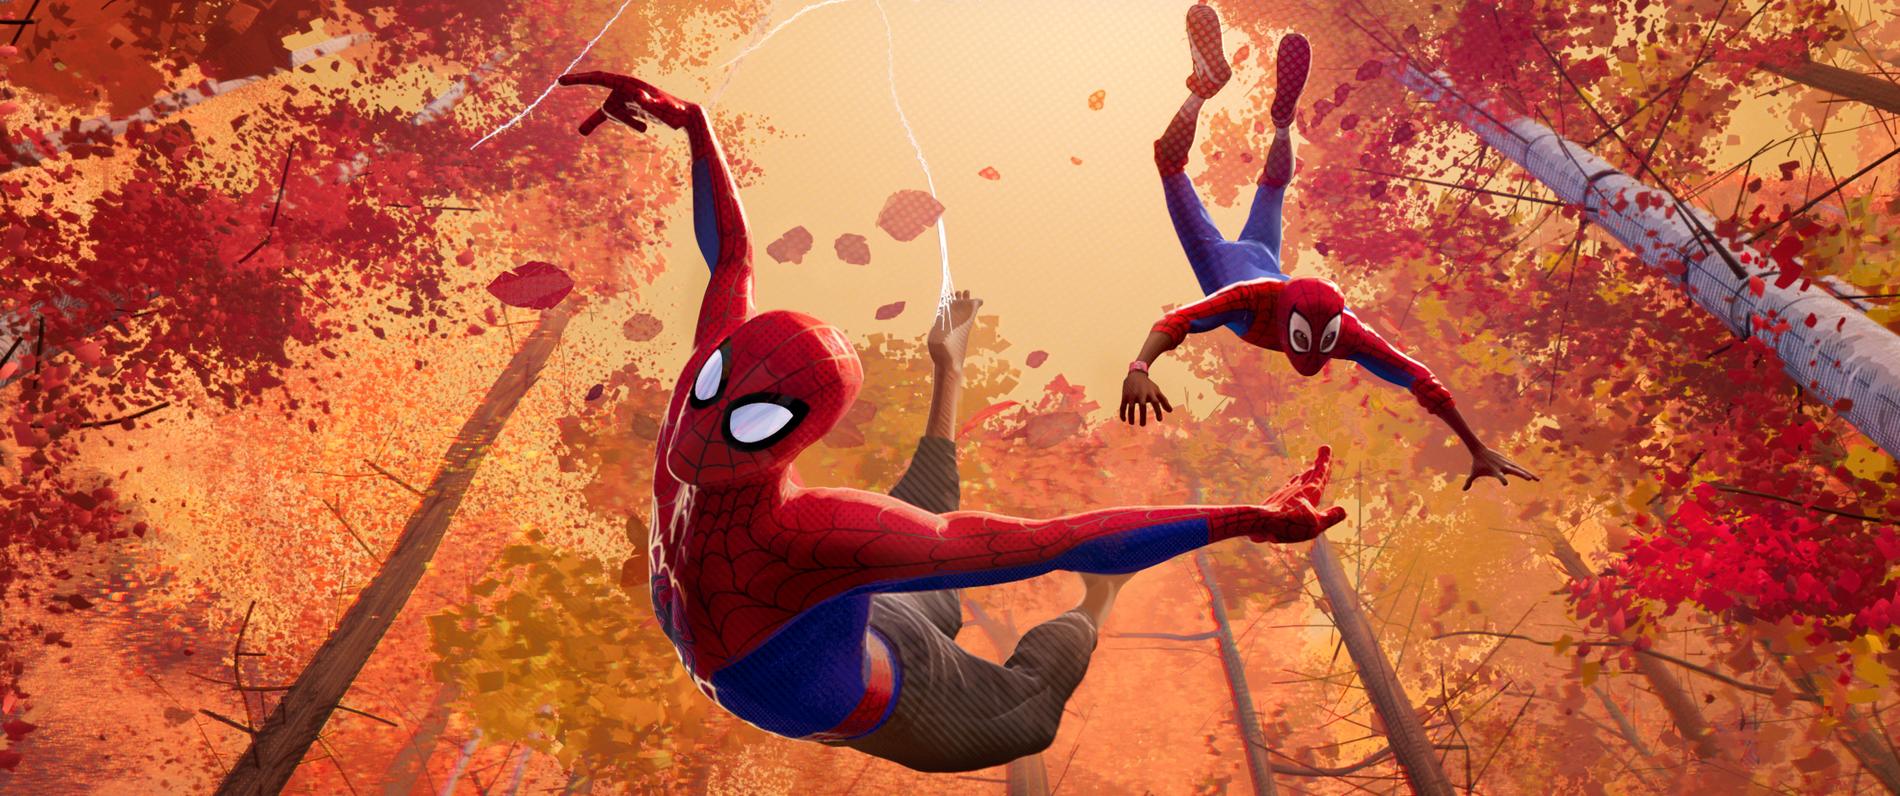 Peter Parker och Miles Morales i "Spider-Man: Across the Spider-Verse" från 2018. Pressbild.